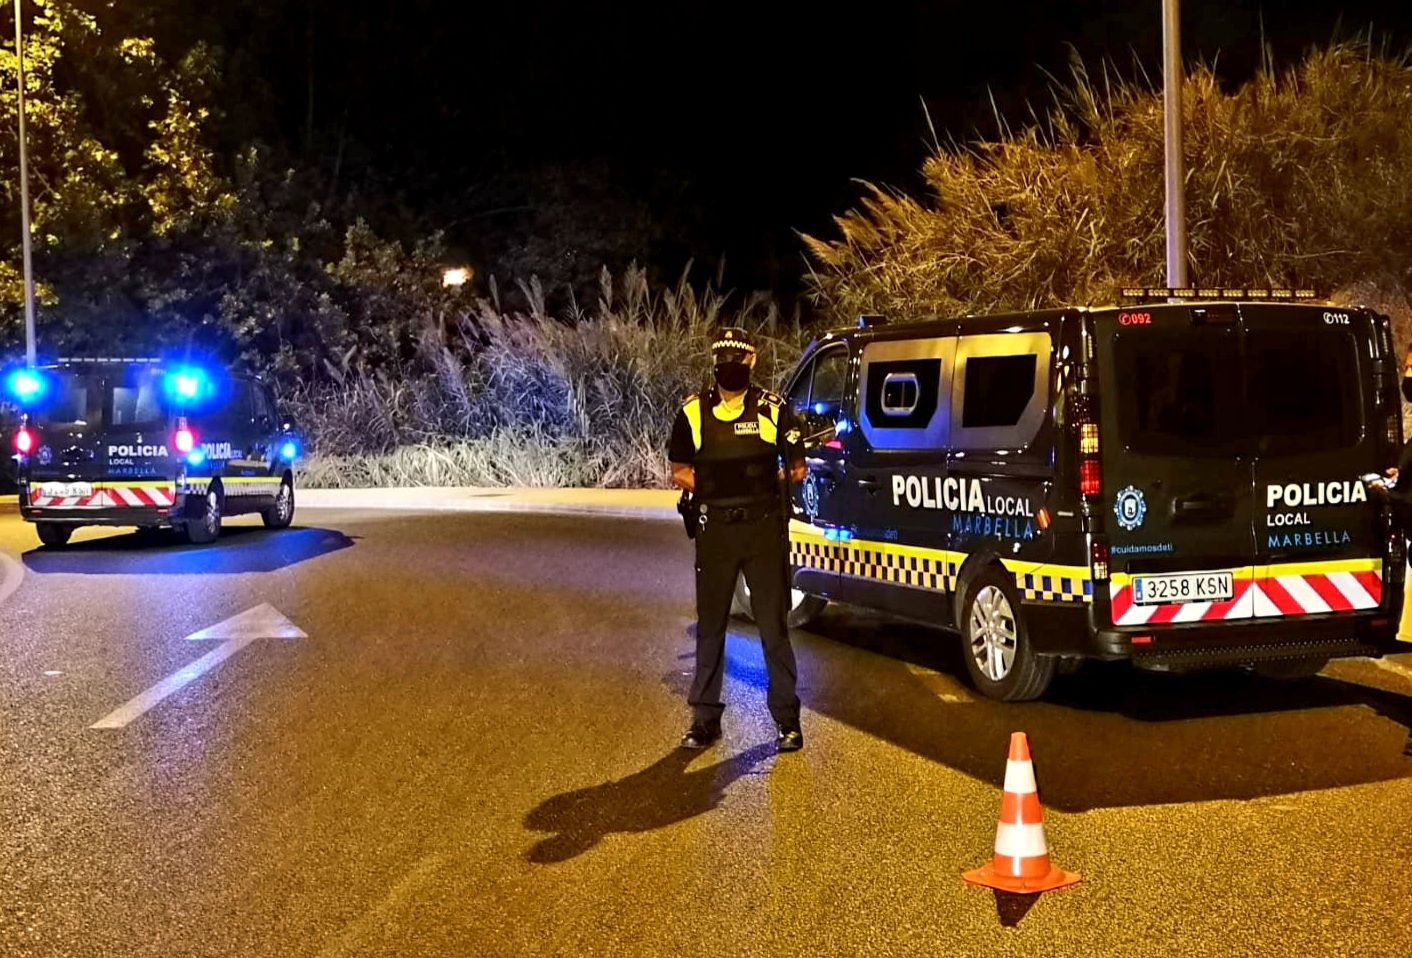 Policía Local de Marbella en una imagen reciente.